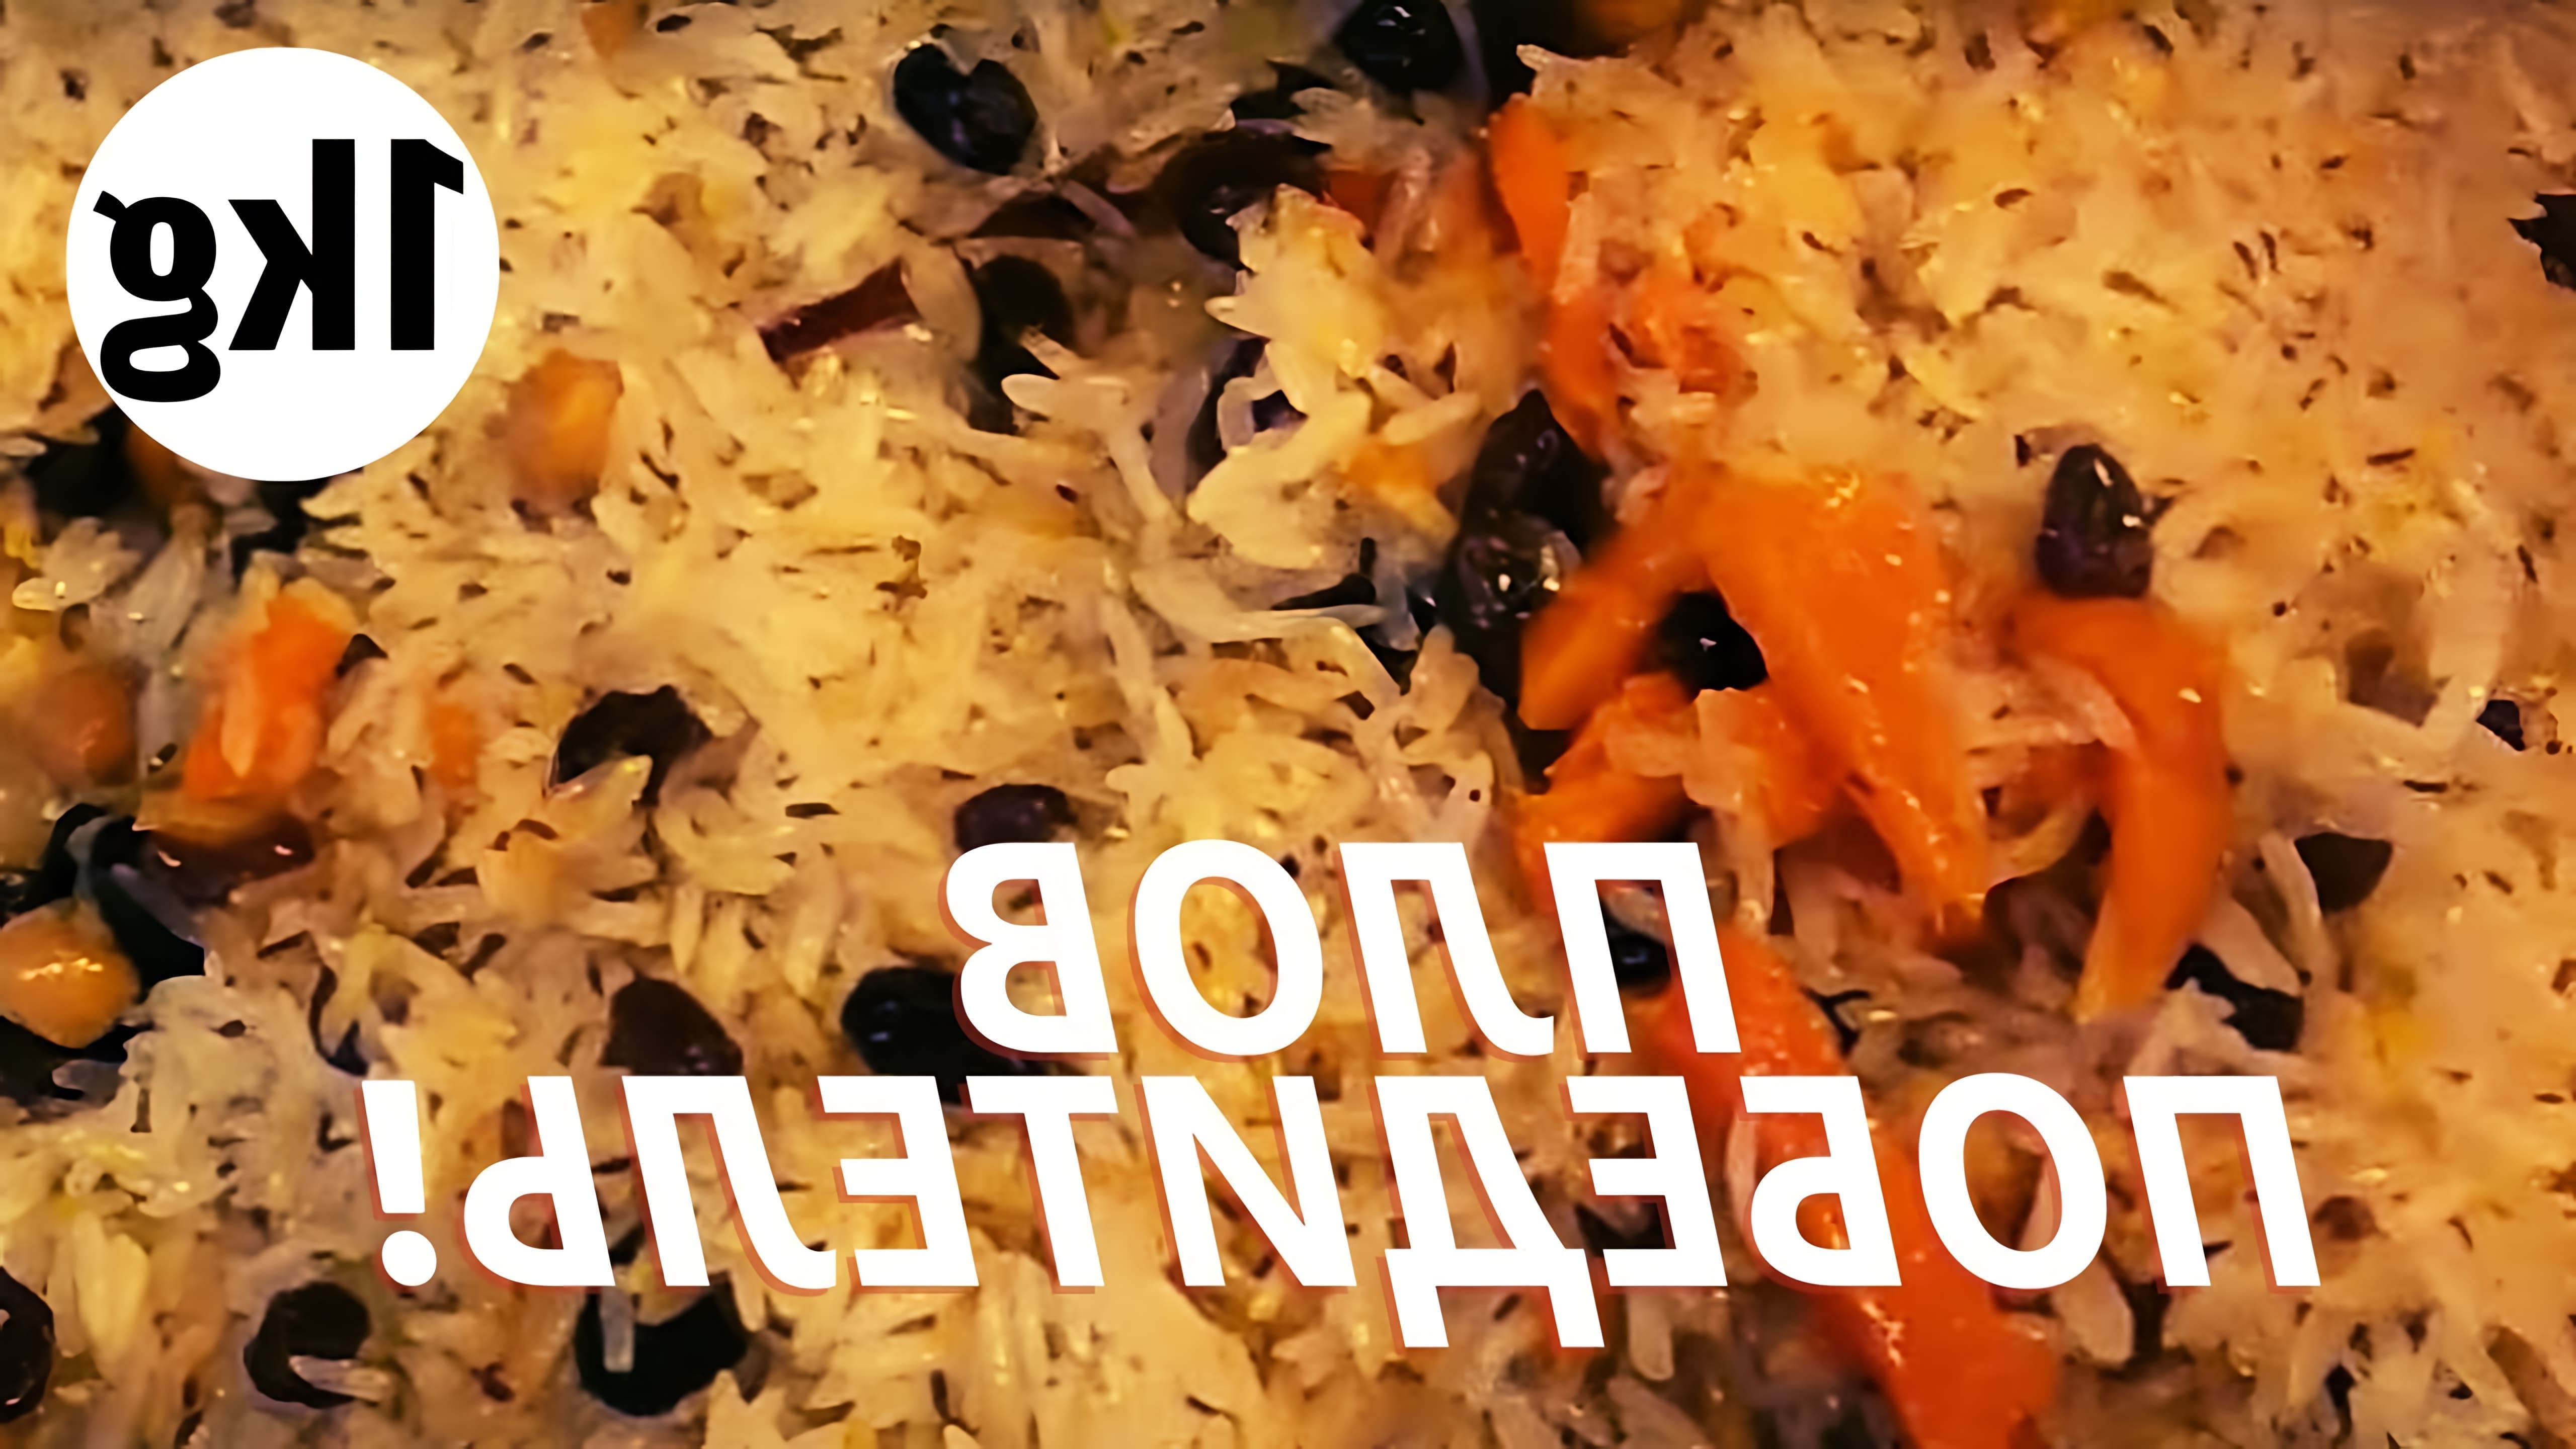 В этом видео-ролике мы увидим, как приготовить плов на 1 кг риса, используя только самые простые ингредиенты